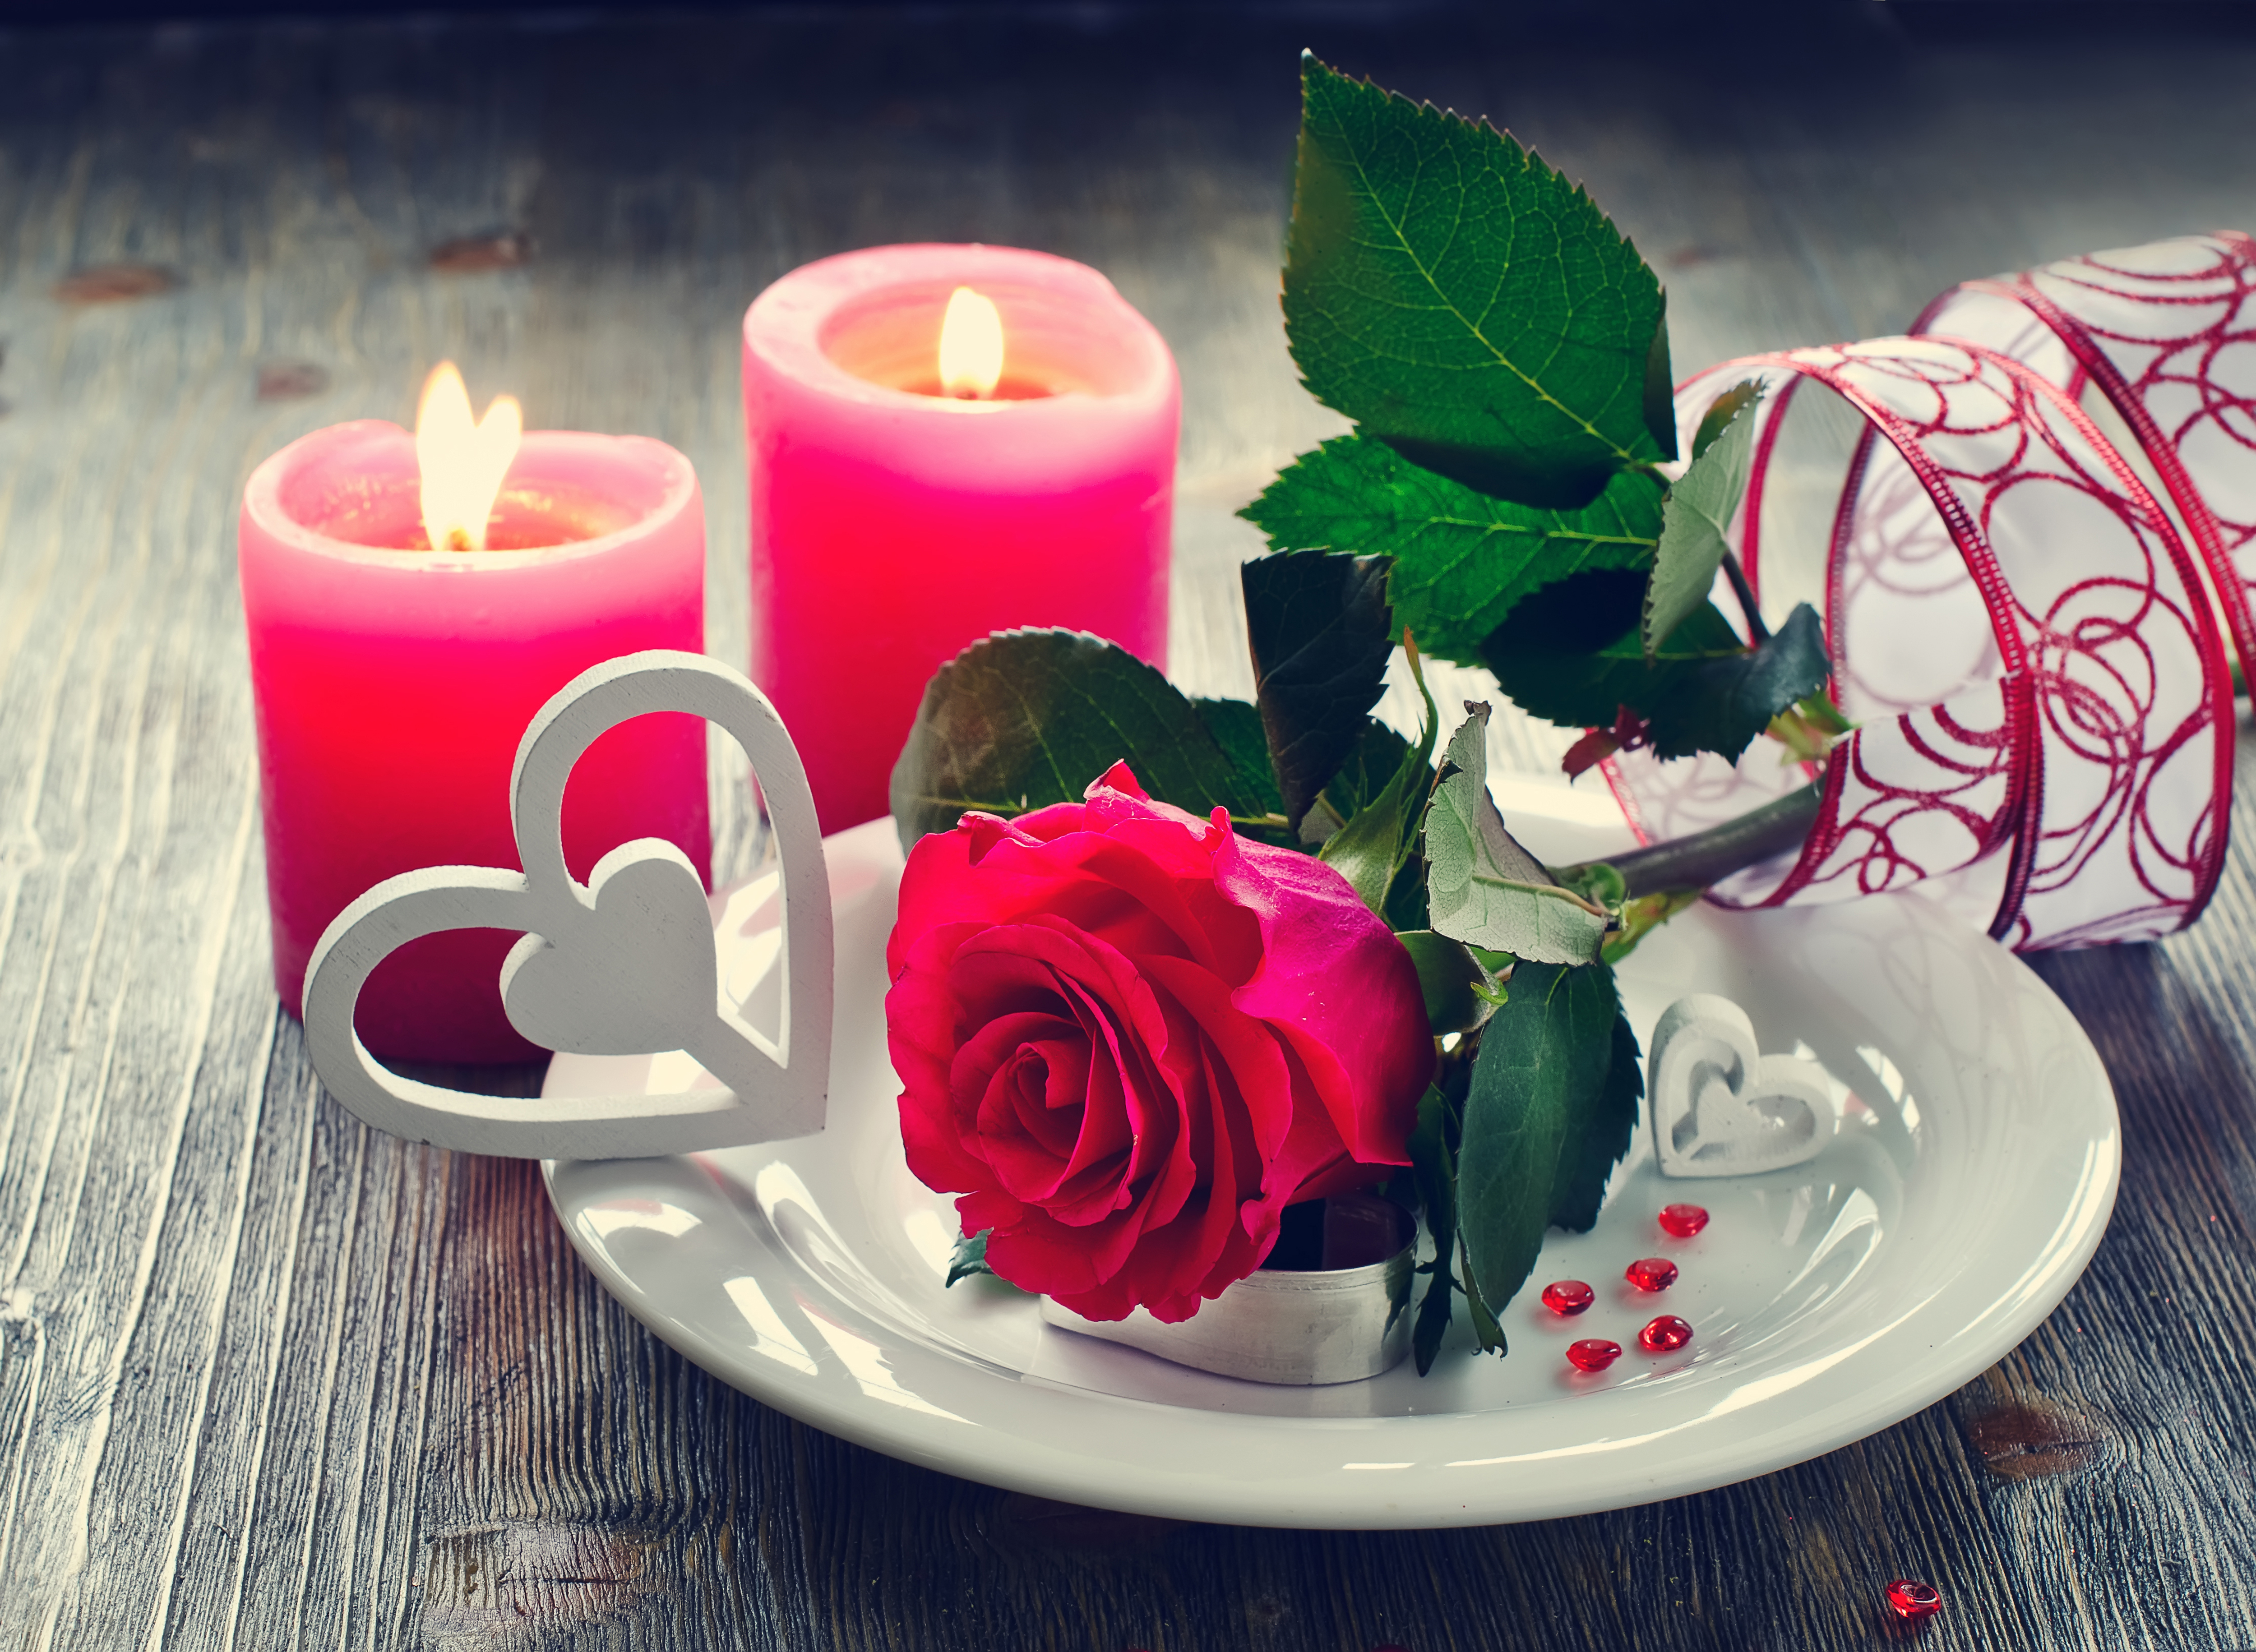 Картинки День святого Валентина Сердце Розы цветок Свечи 5000x3662 День всех влюблённых серце сердца сердечко роза Цветы